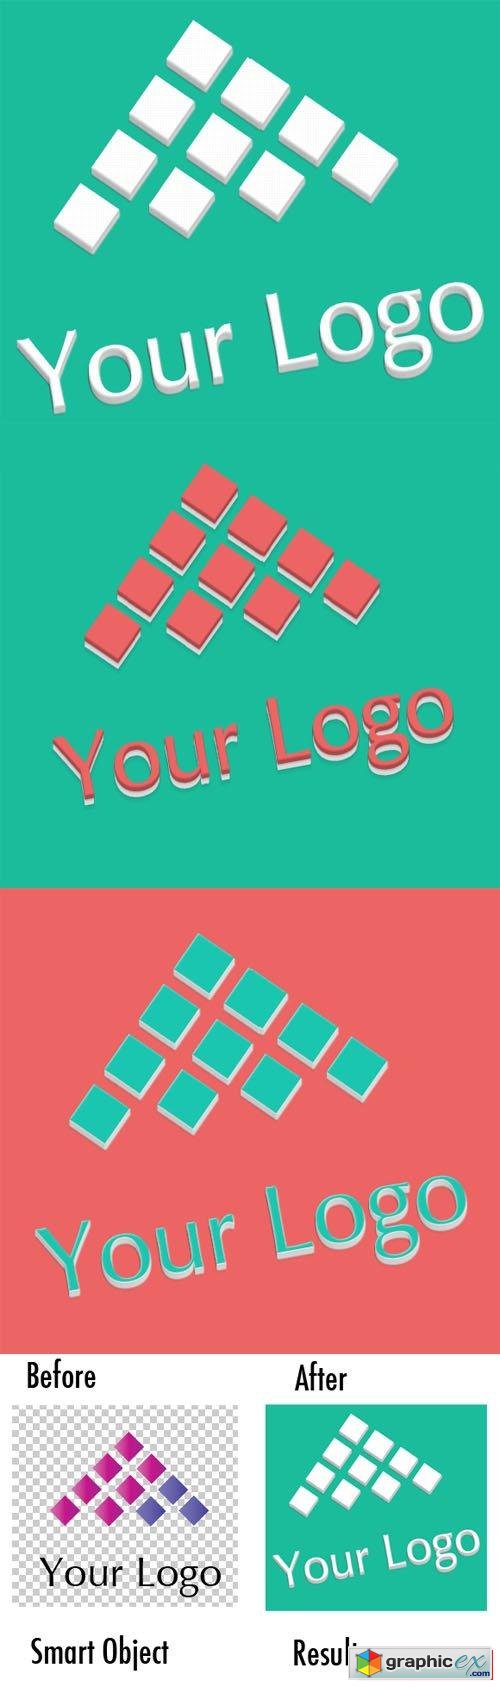 Logo Mock-ups Flat Design Style